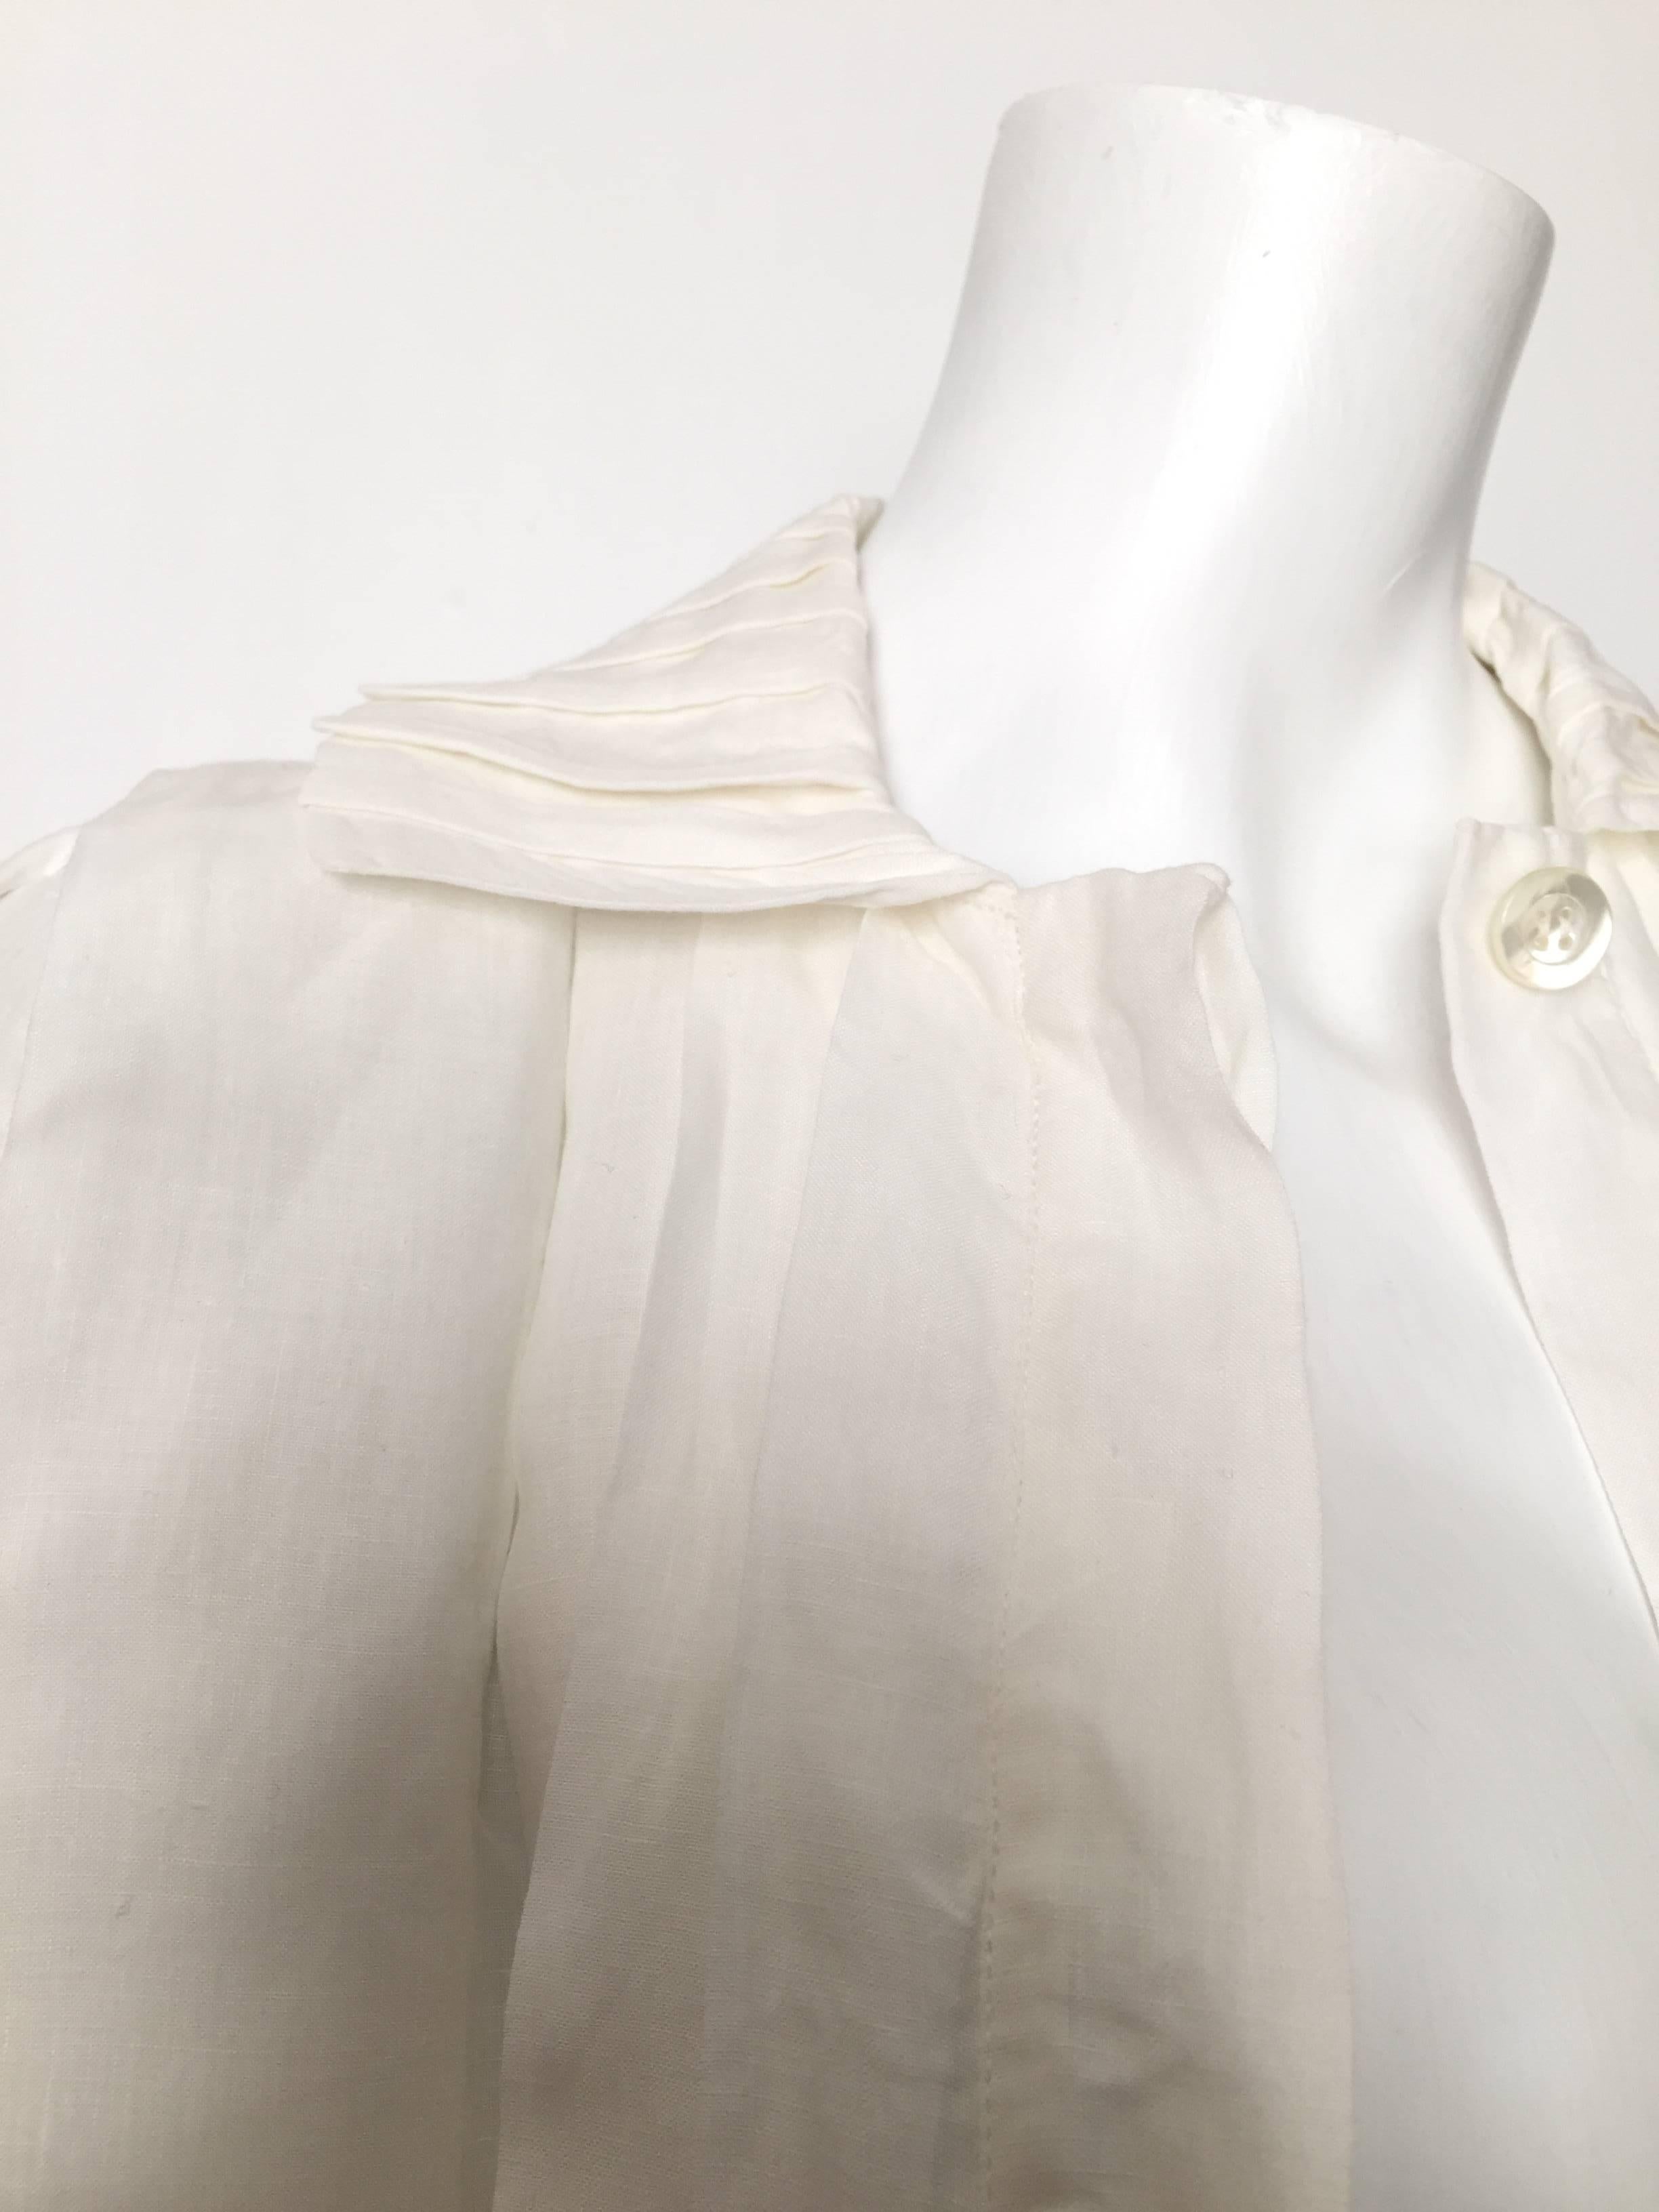 Laura Biagiotti for Bonwit Teller 80s white linen dress size 4 / 6.  For Sale 2